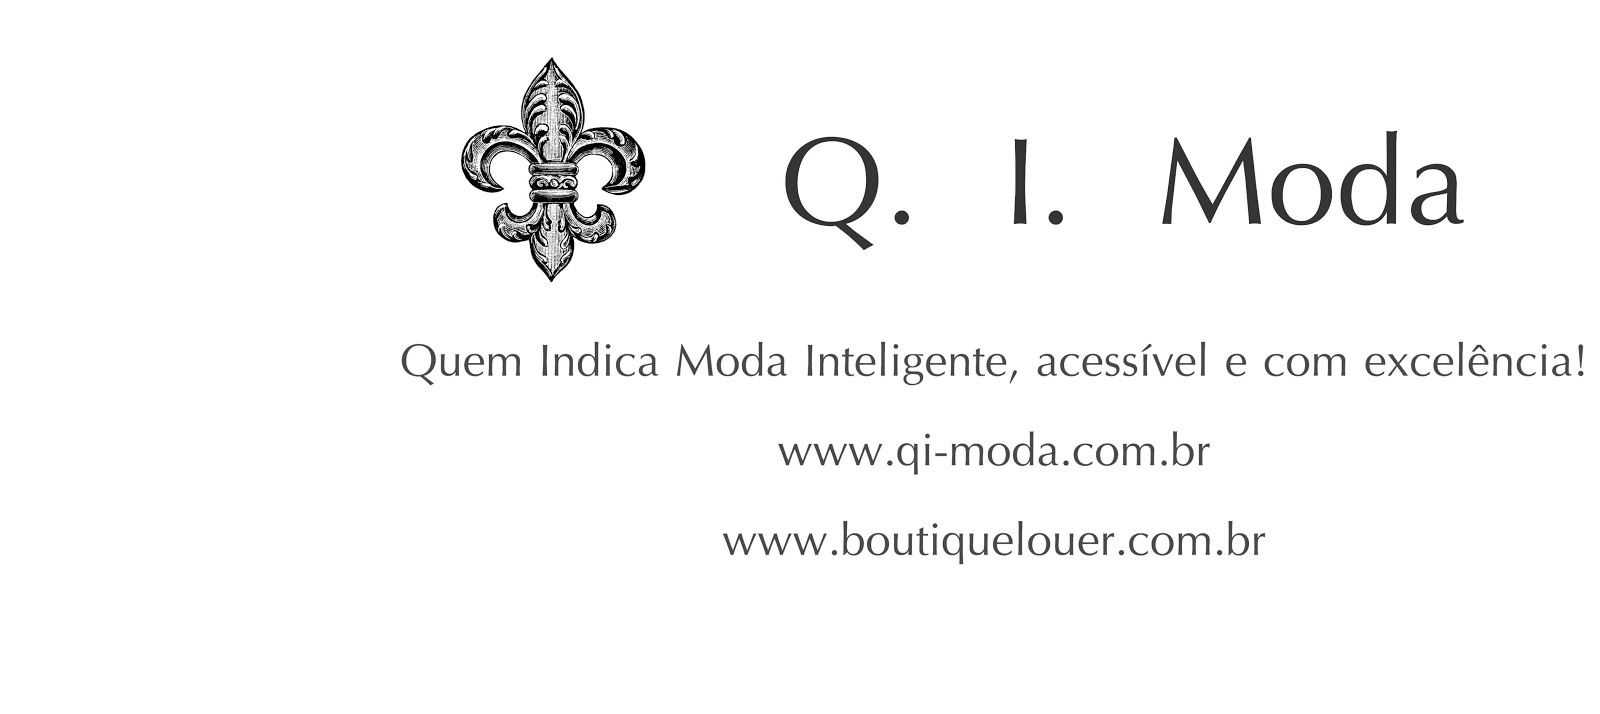 Q. I. Moda